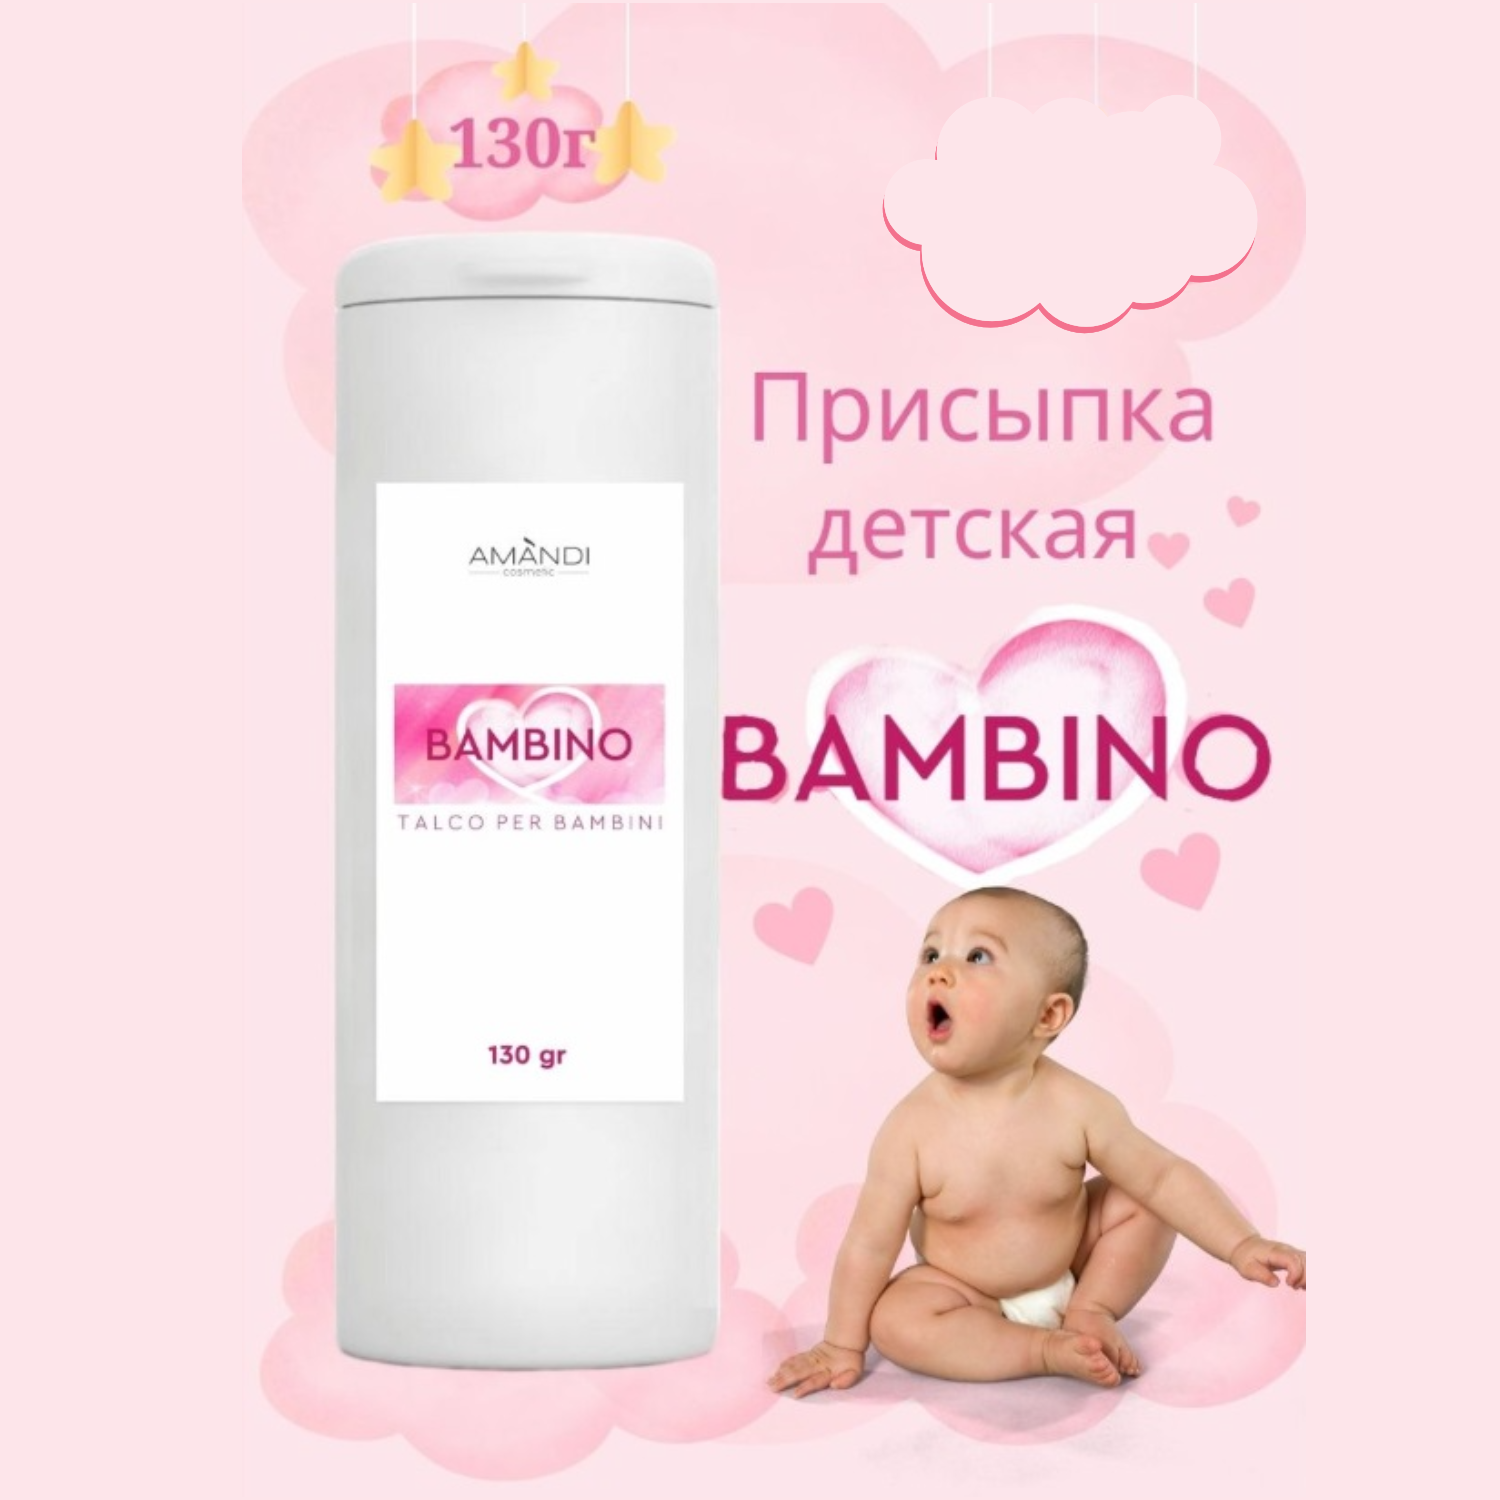 Присыпка детская AMANDI BAMBINO набор без отдушки и с ароматом лимона 2 шт по 130 грамм - фото 2